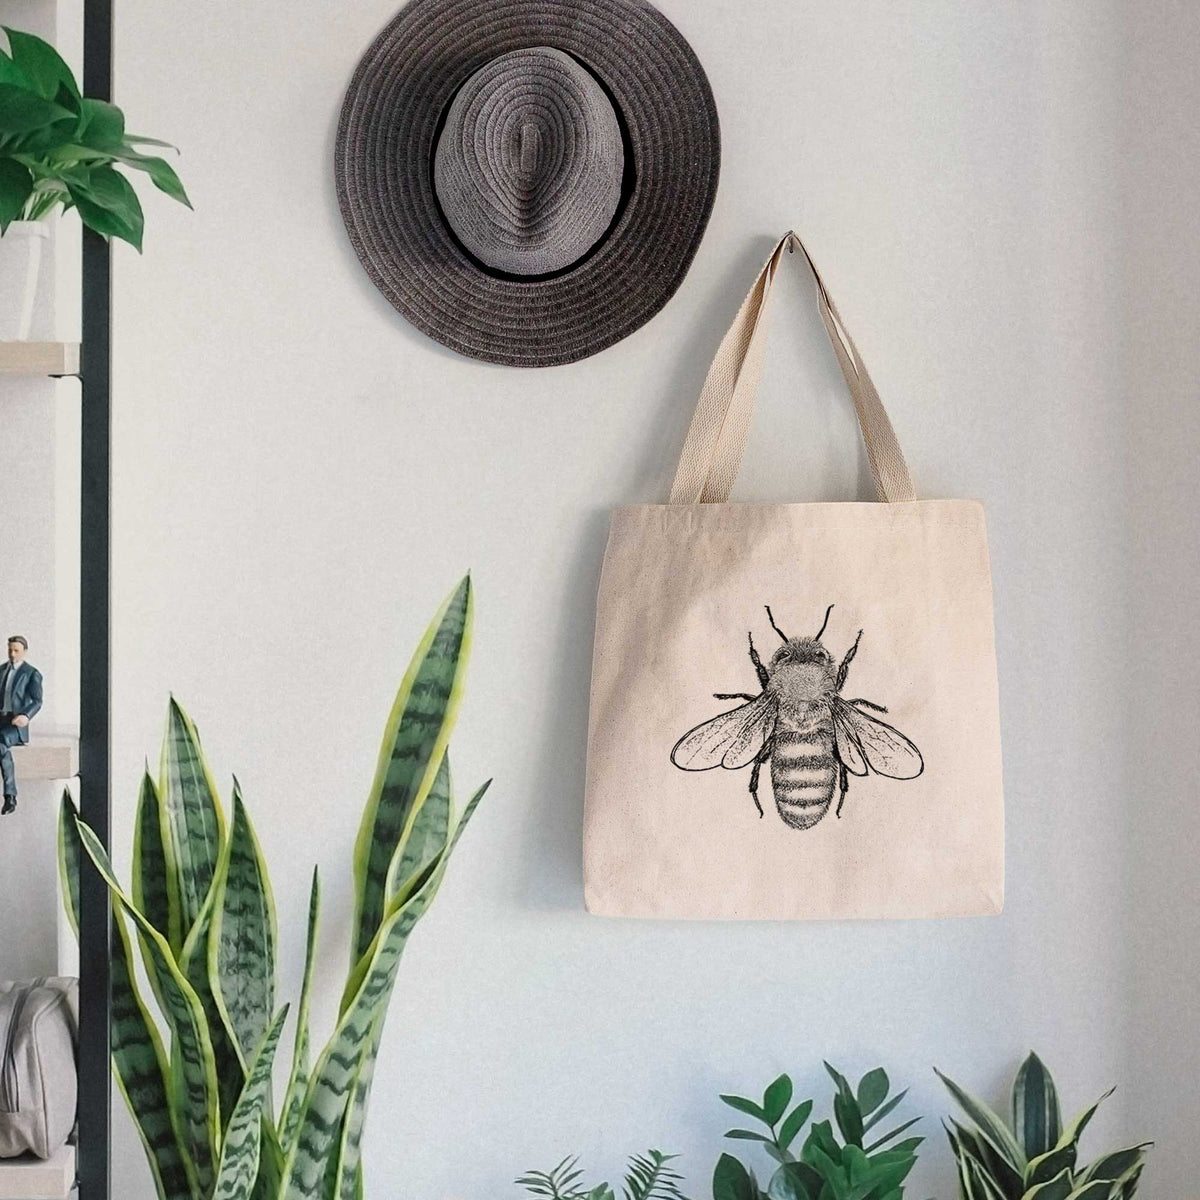 Apis Mellifera - Honey Bee - Tote Bag